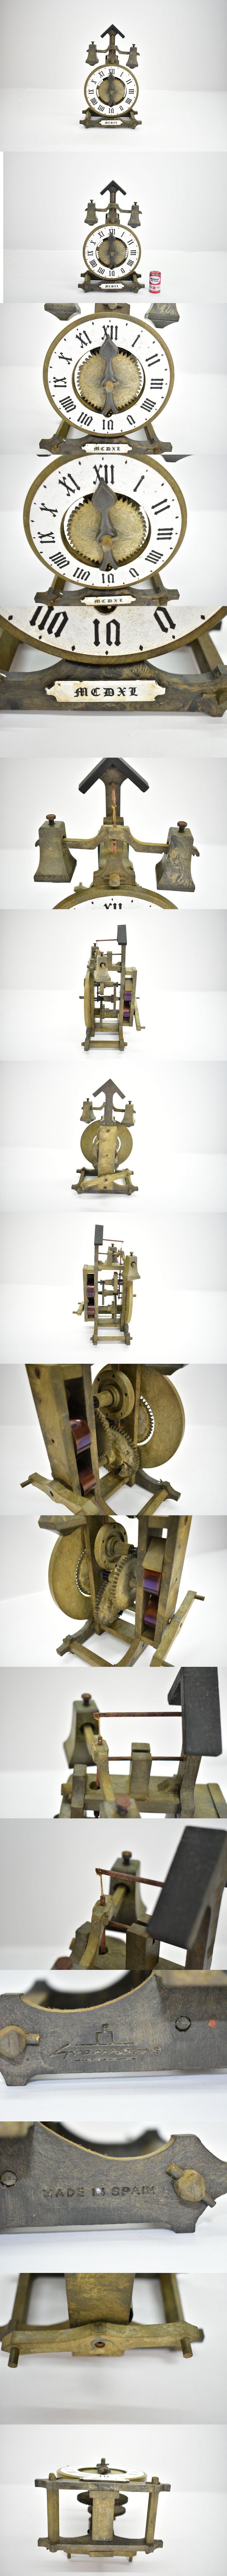 限定品質保証スペイン製 アンティーク 木製歯車 ゼンマイ式 置き時計 MCDXL [希少][ビンテージ][からくり] アナログ